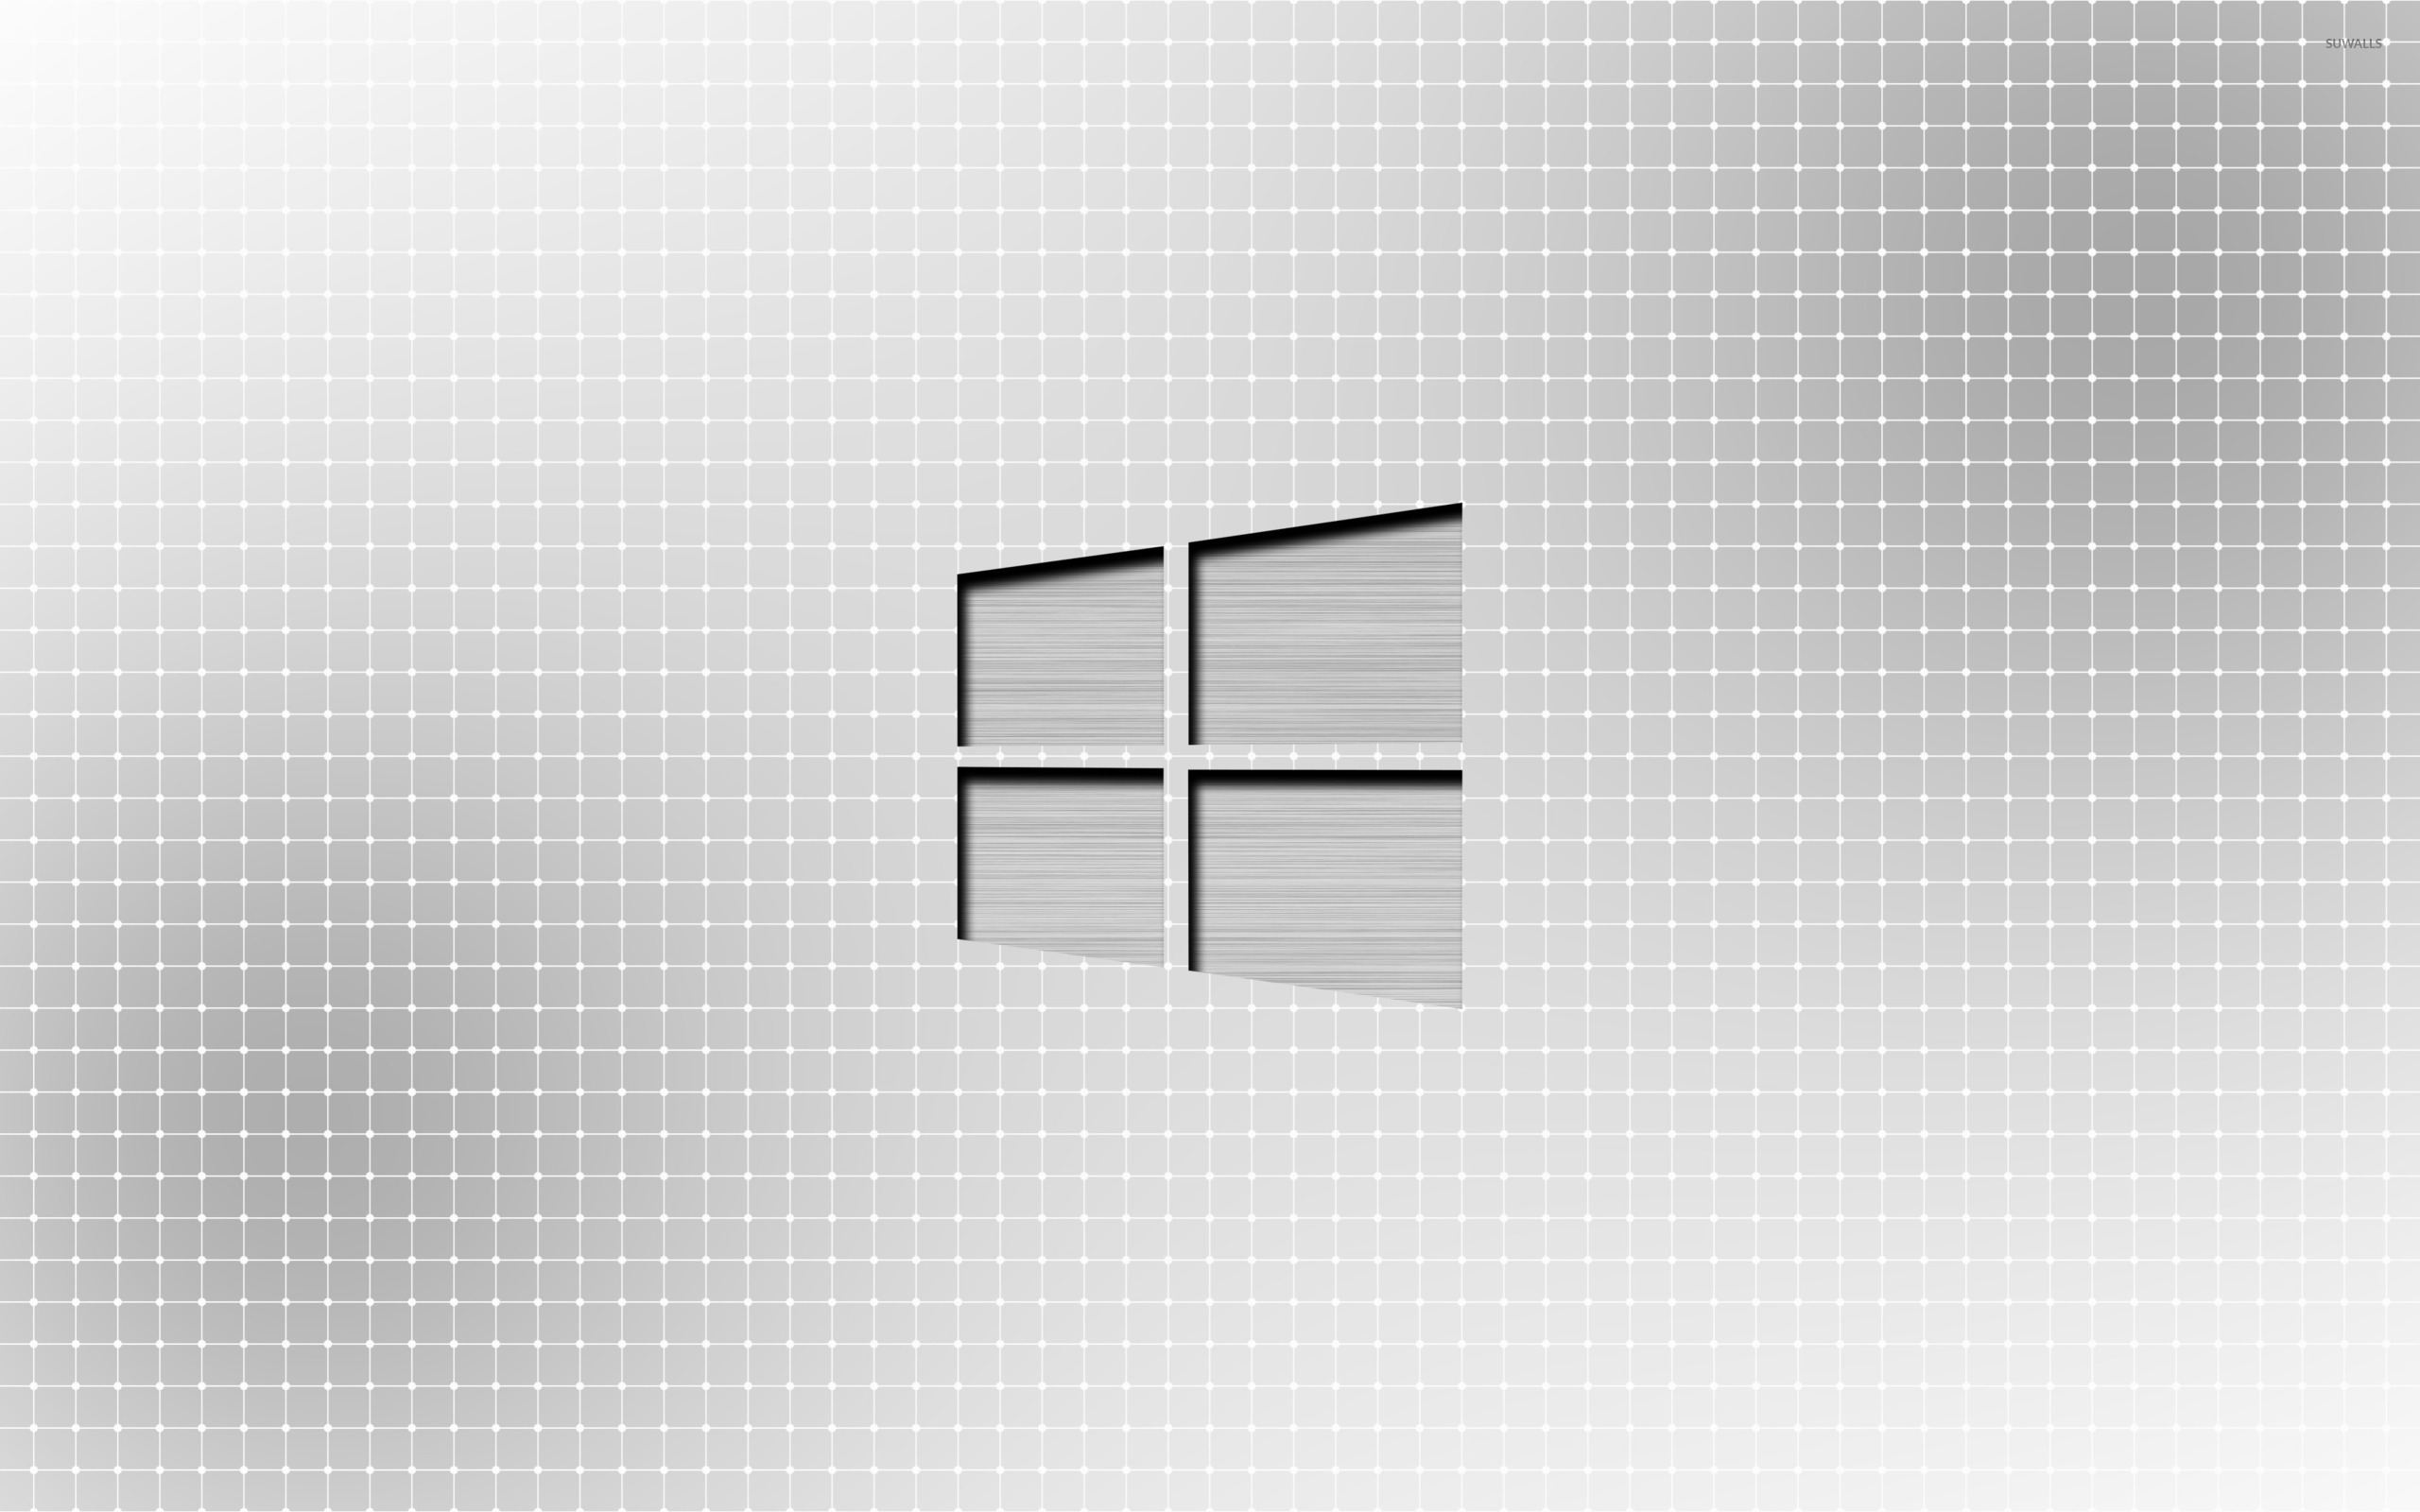 Metal Windows On A Light Grid Wallpaper Puter